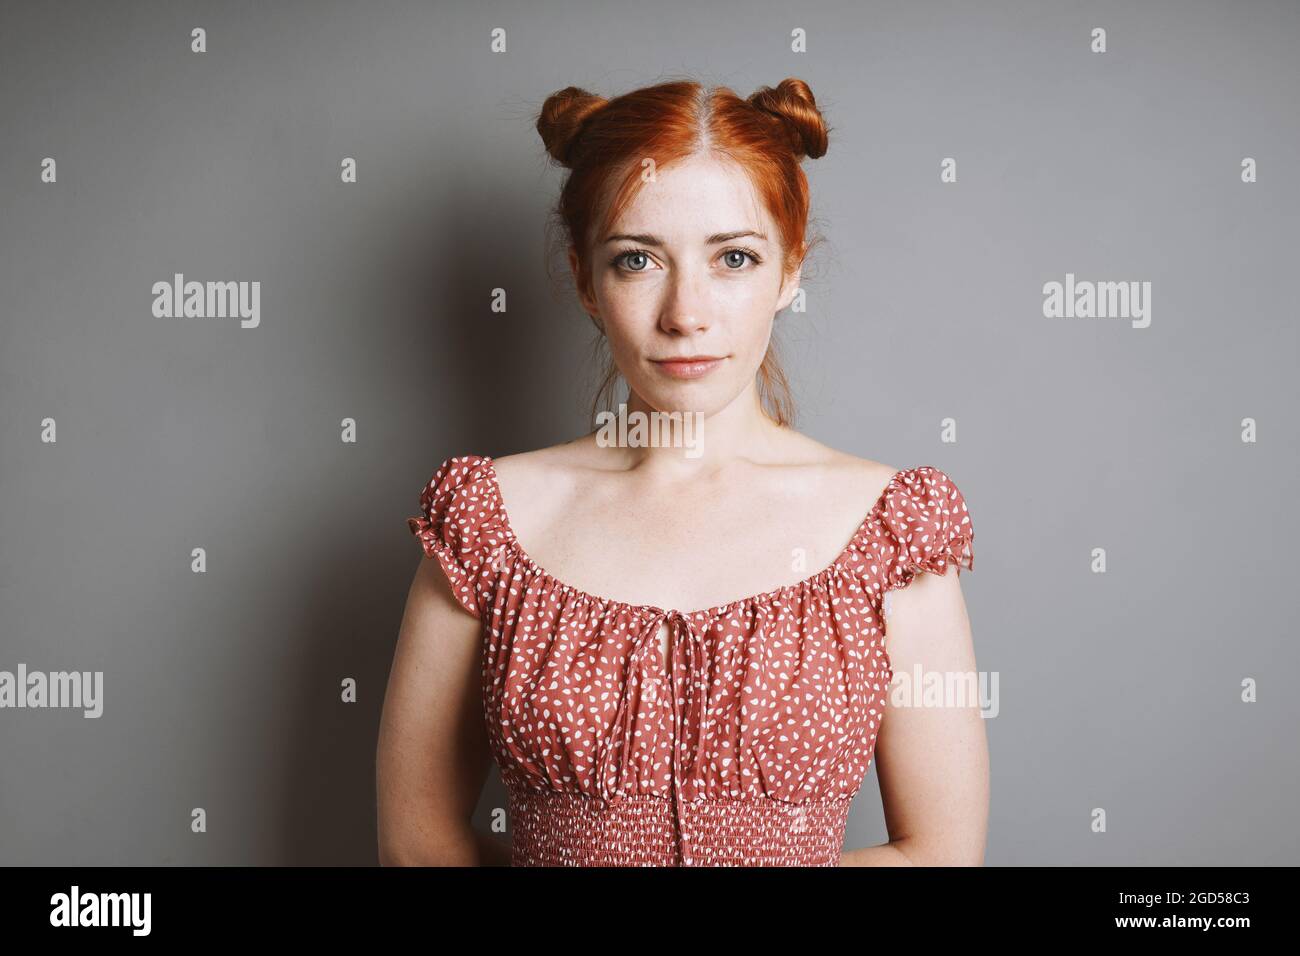 portrait intérieur de jeune femme souriante avec des petits pains aux cheveux rouges Banque D'Images